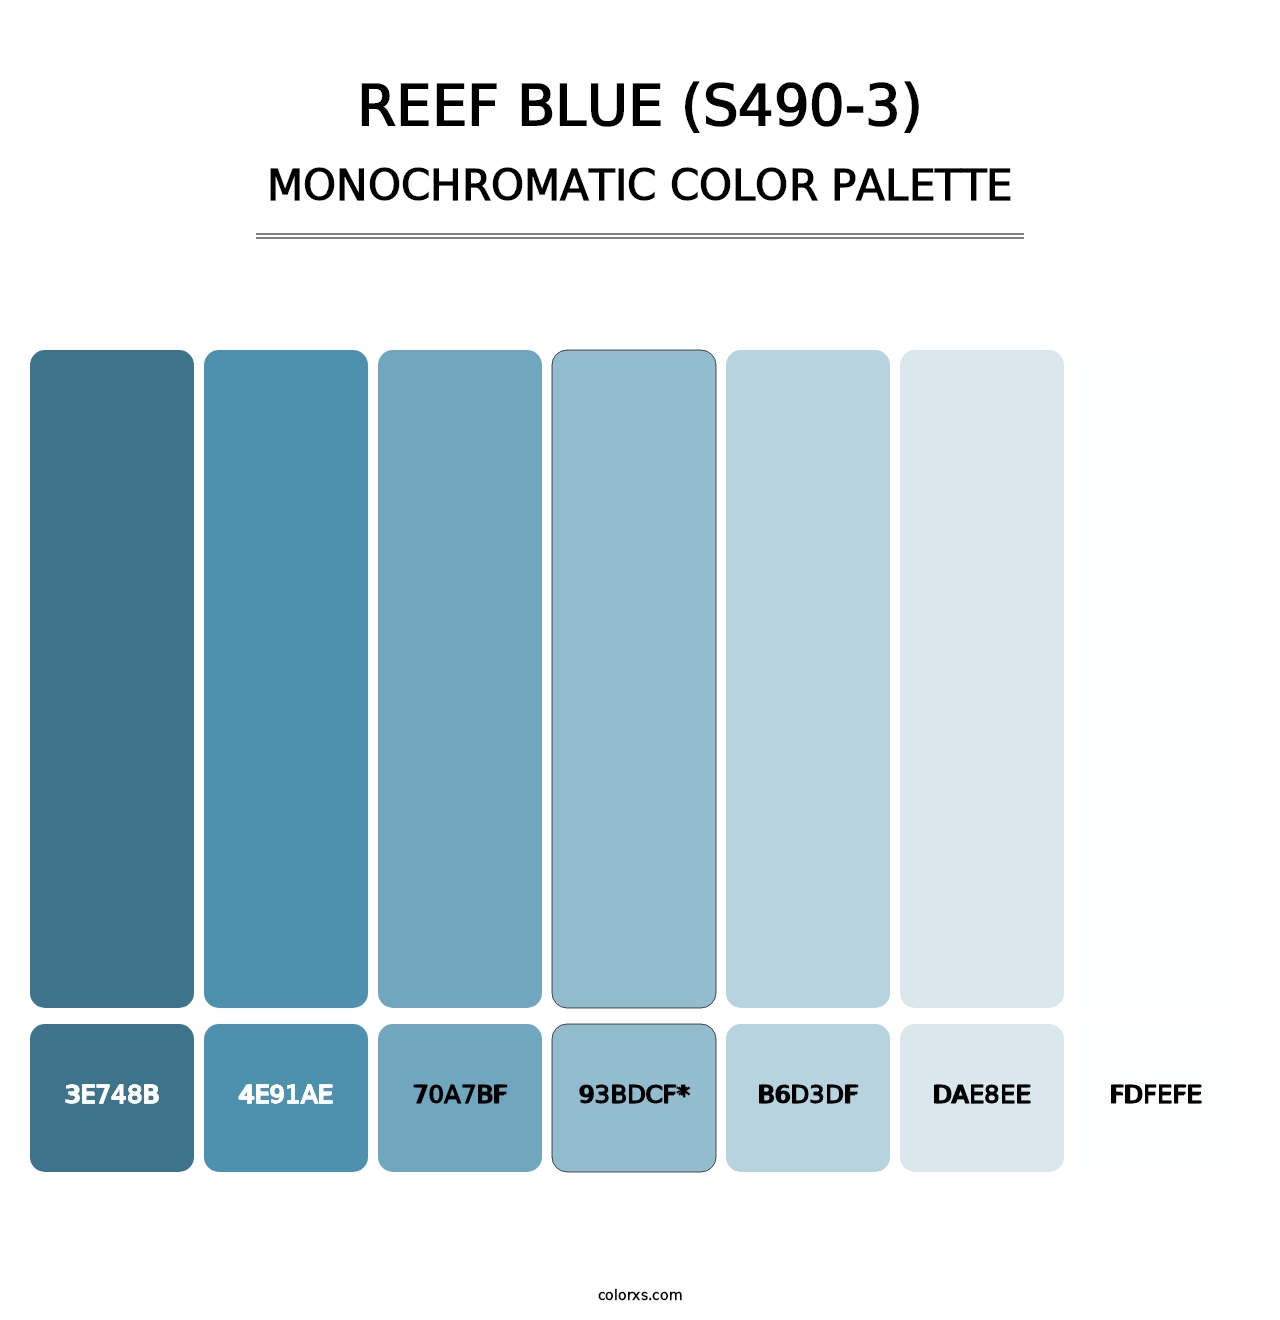 Reef Blue (S490-3) - Monochromatic Color Palette